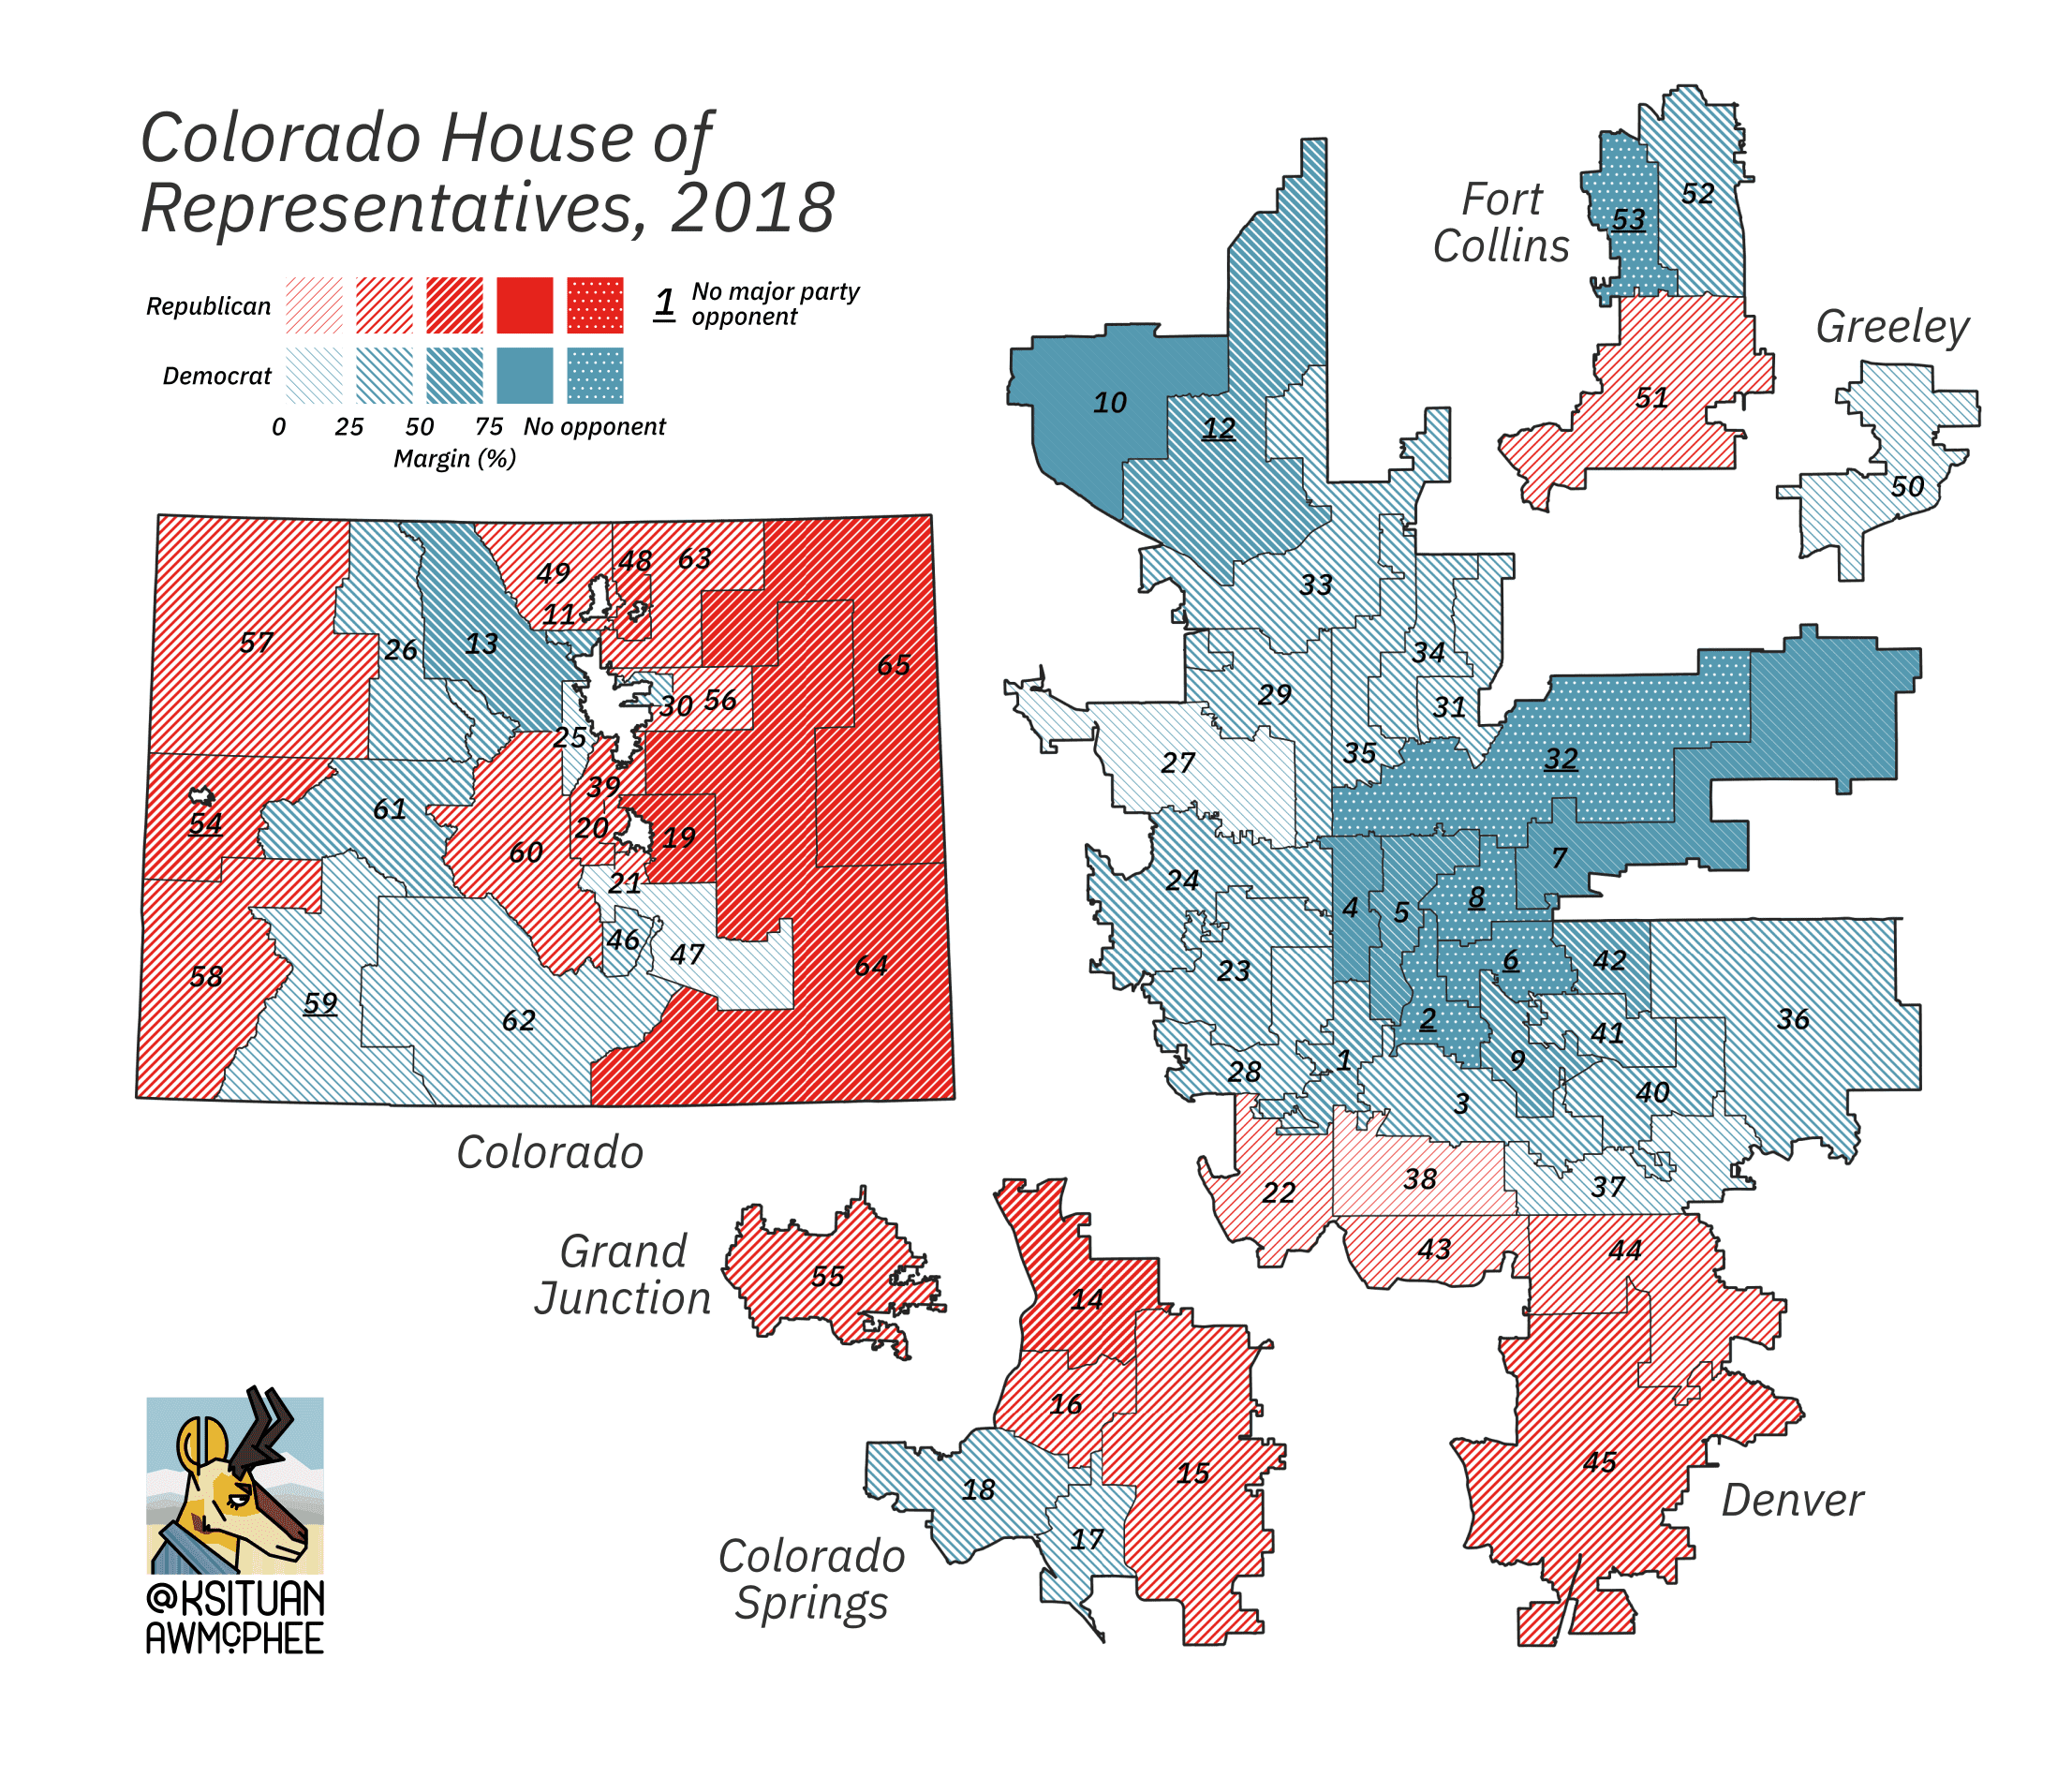 A political map of Colorado.